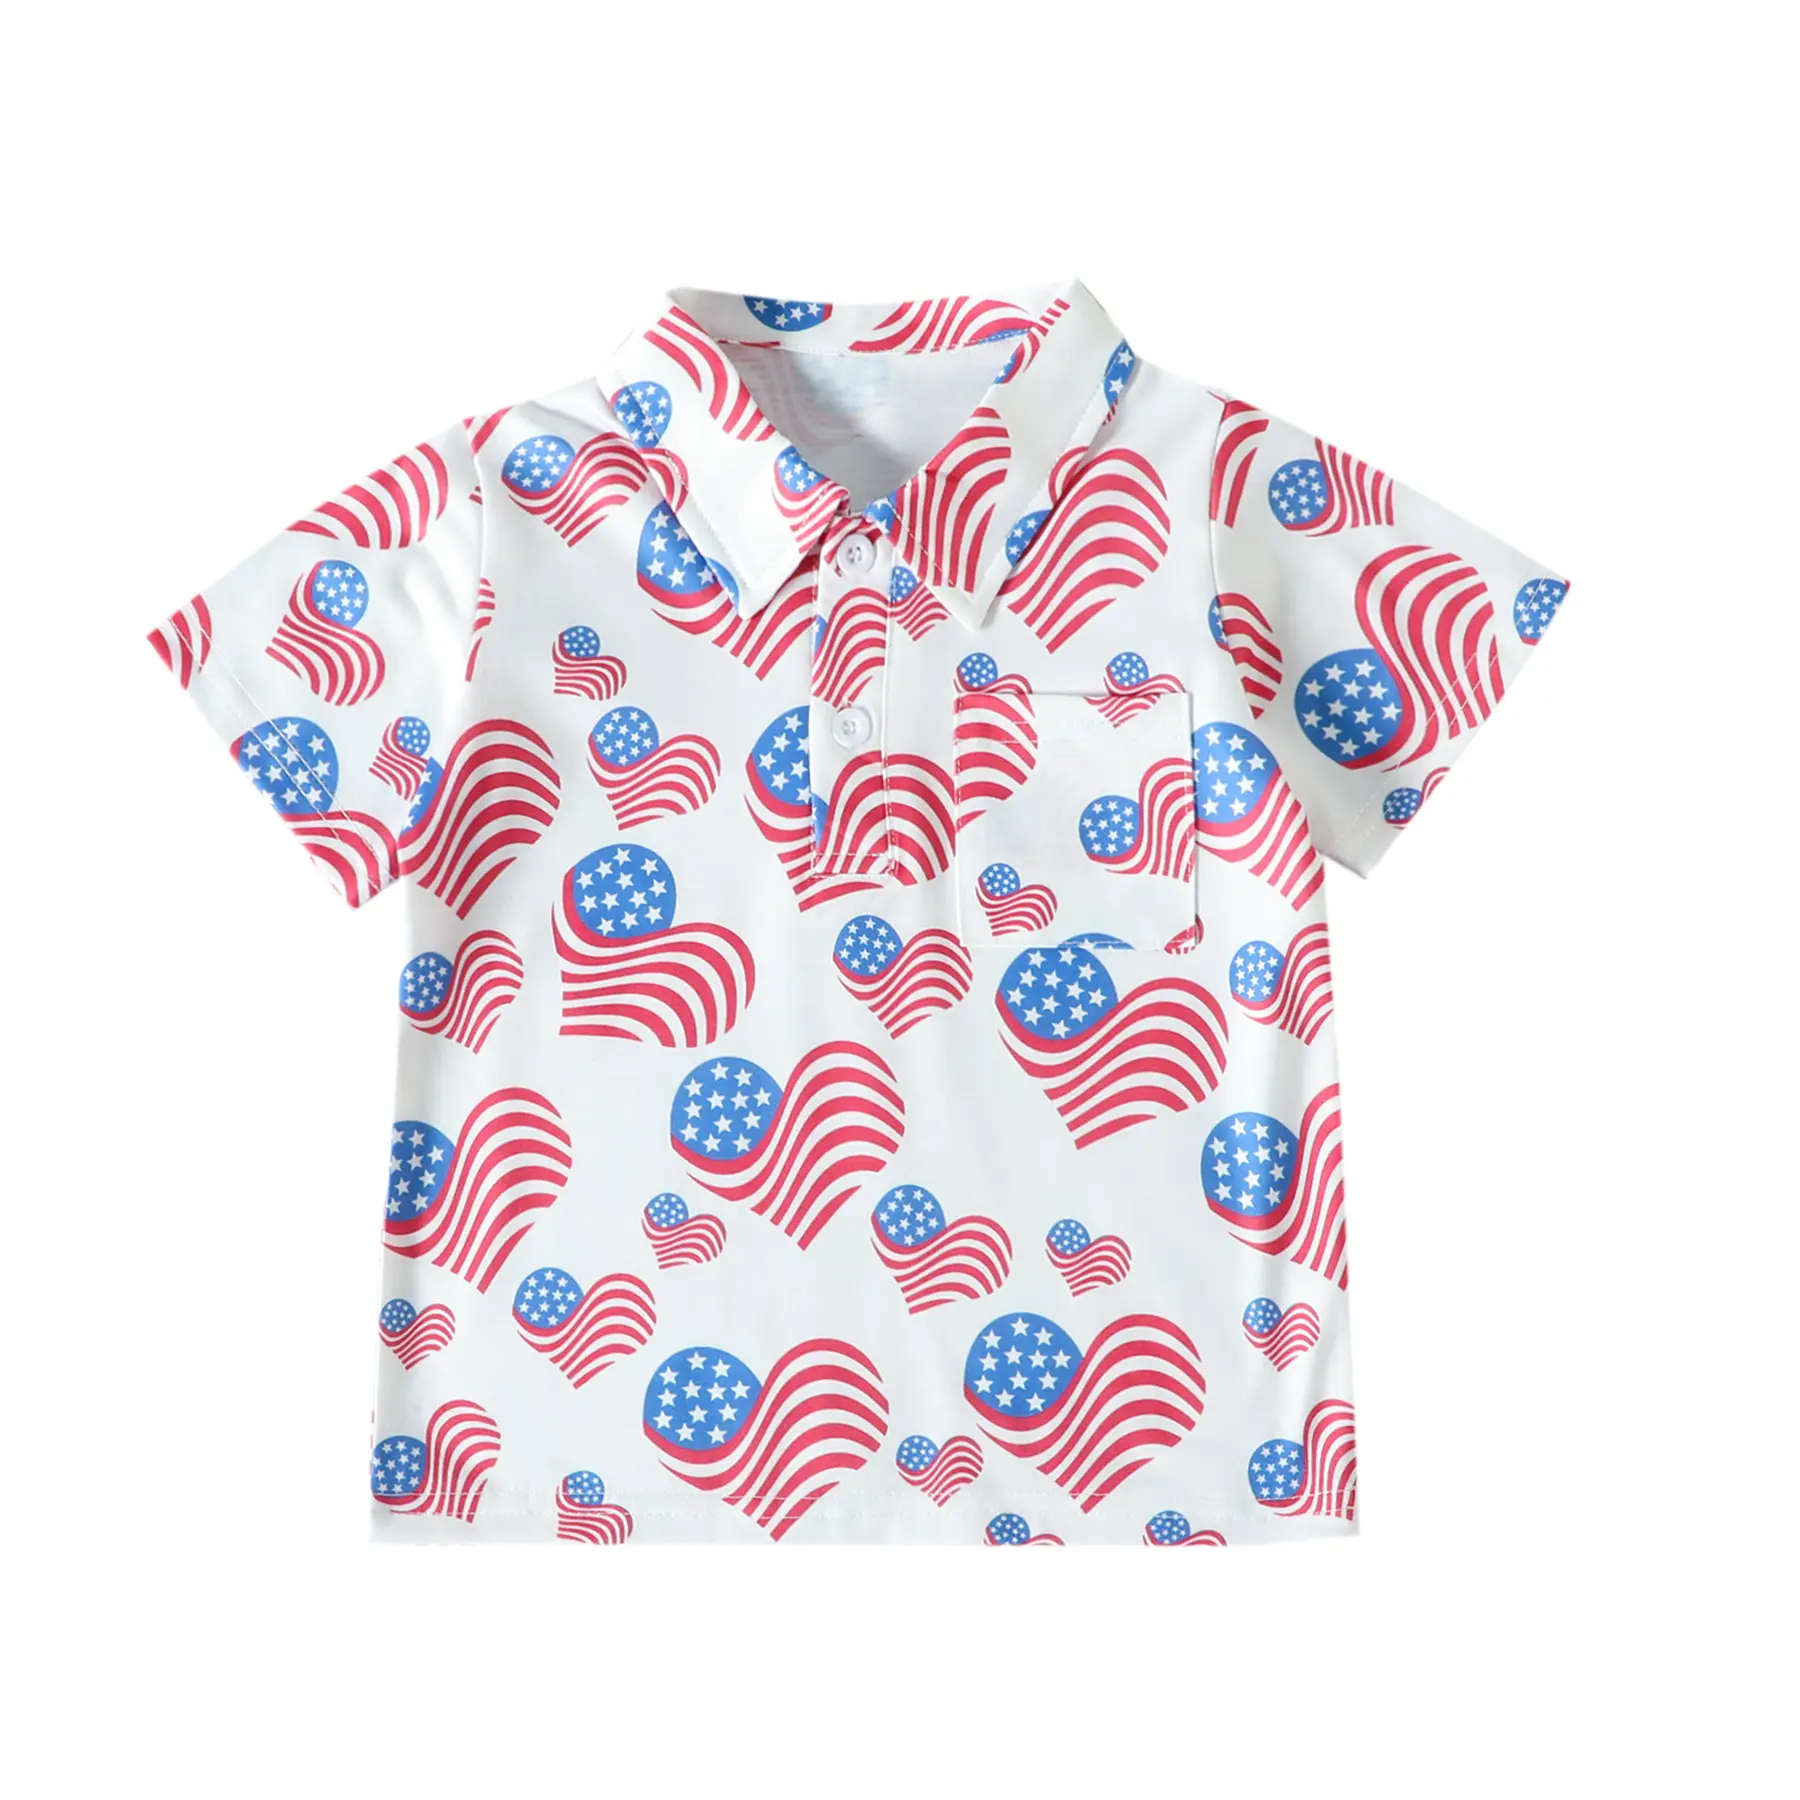 Rarewe kaus Anak perempuan lengan pendek, T-Shirt leher Turtleneck motif Pentagram warna biru merah putih Hari Kemerdekaan Amerika